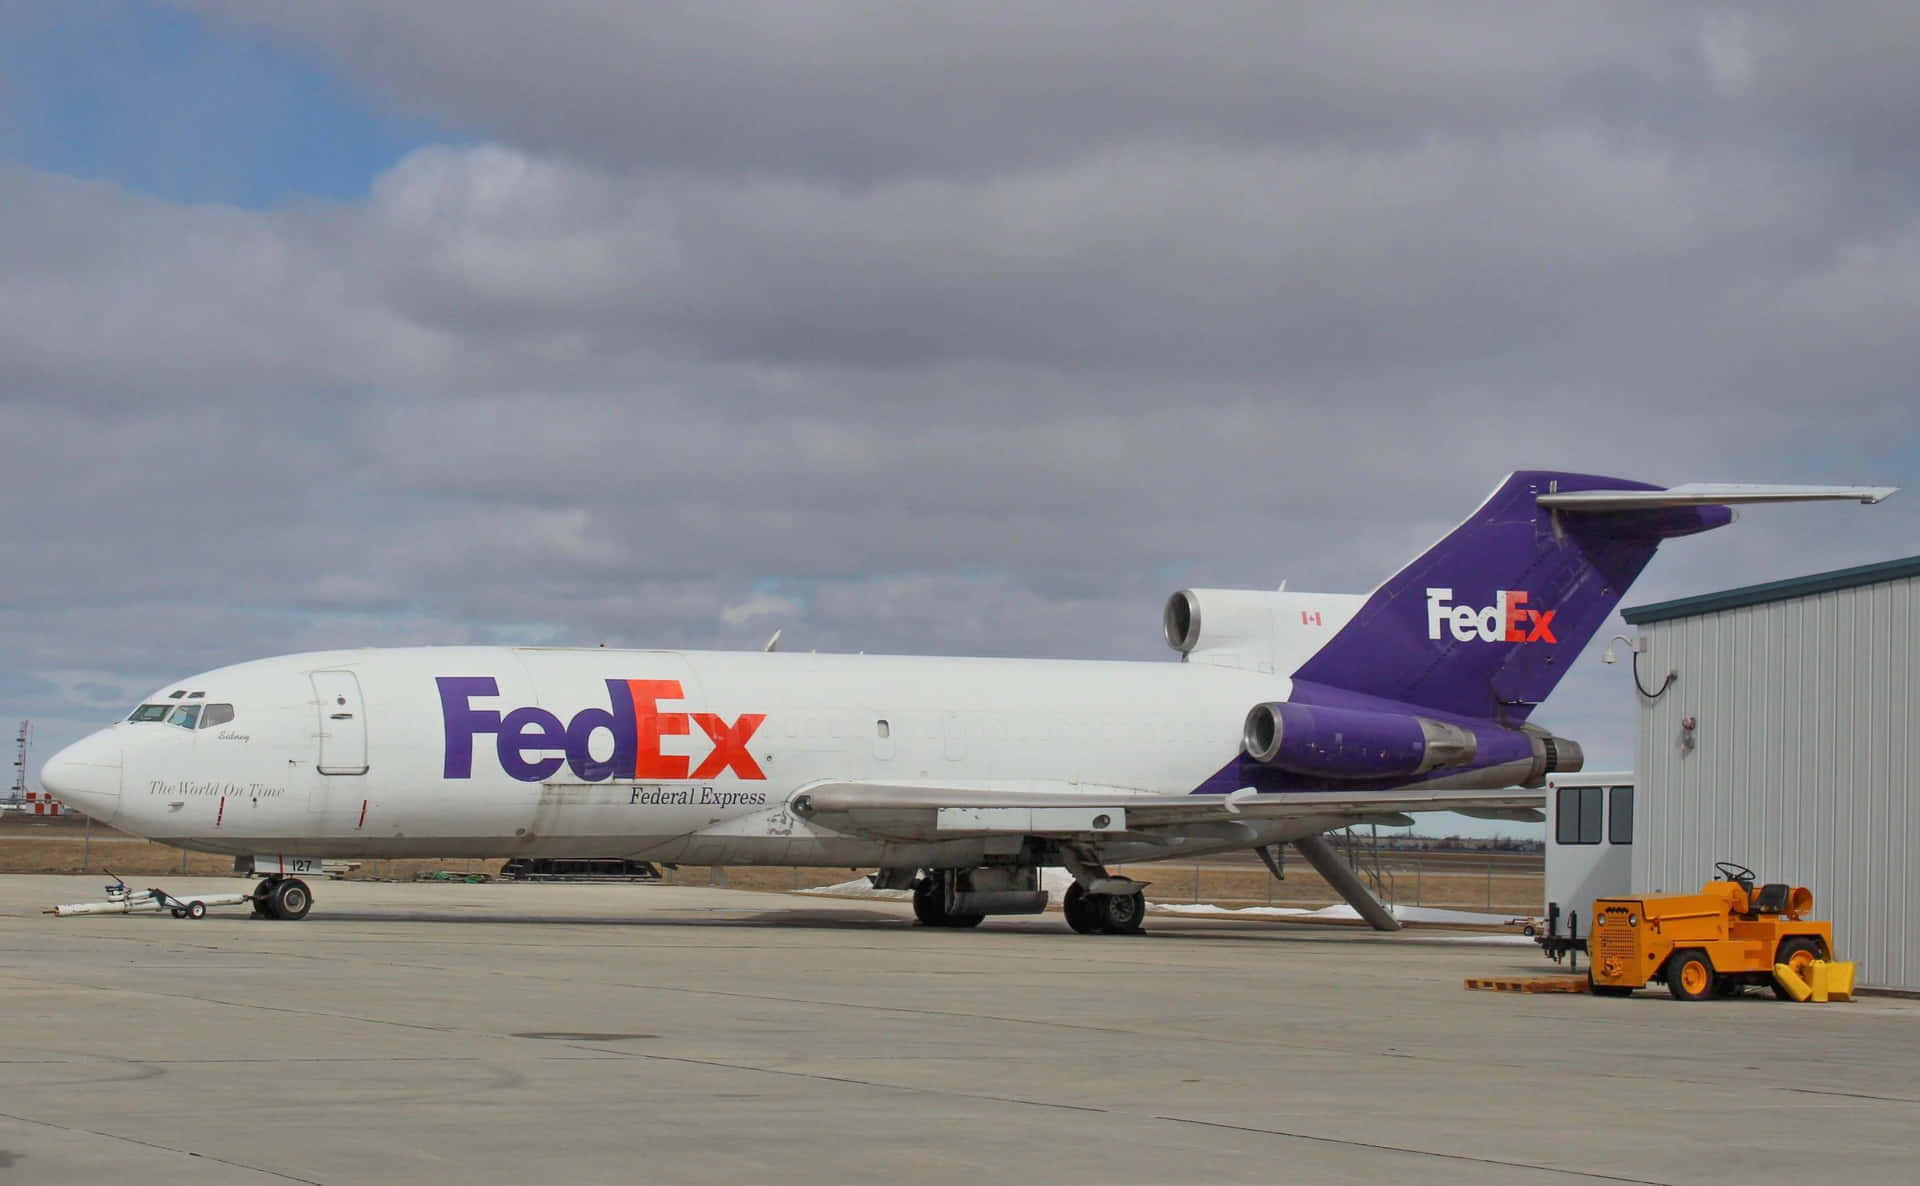 Sceglila Consegna Express Di Fedex Per Le Spedizioni Urgenti